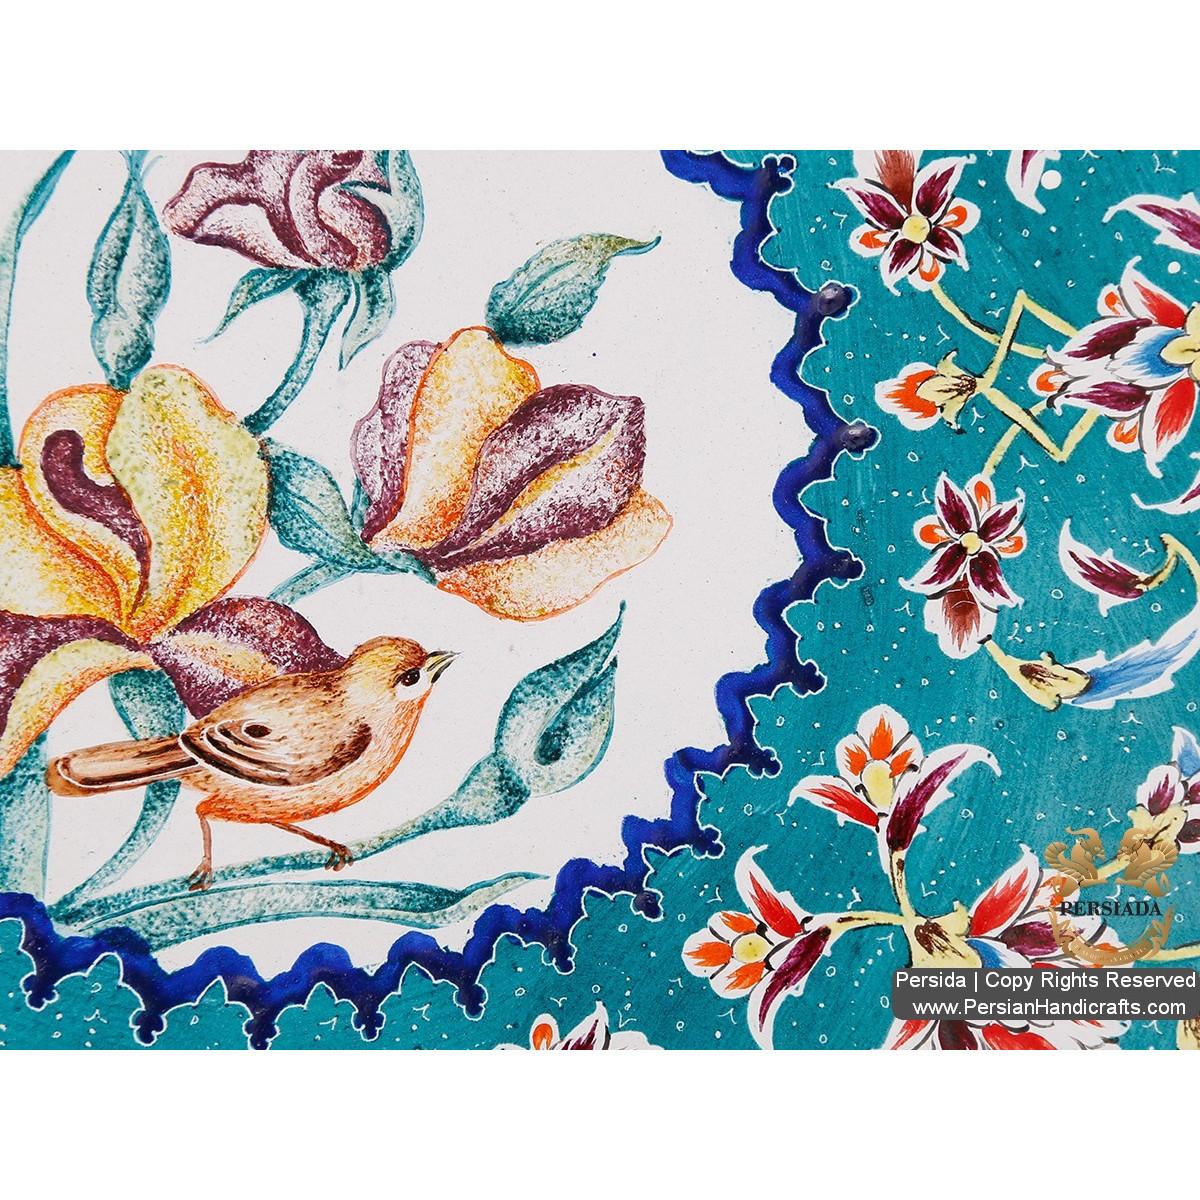 Wall Plate | Hand Painted Minakari | HE5202-Persian Handicrafts